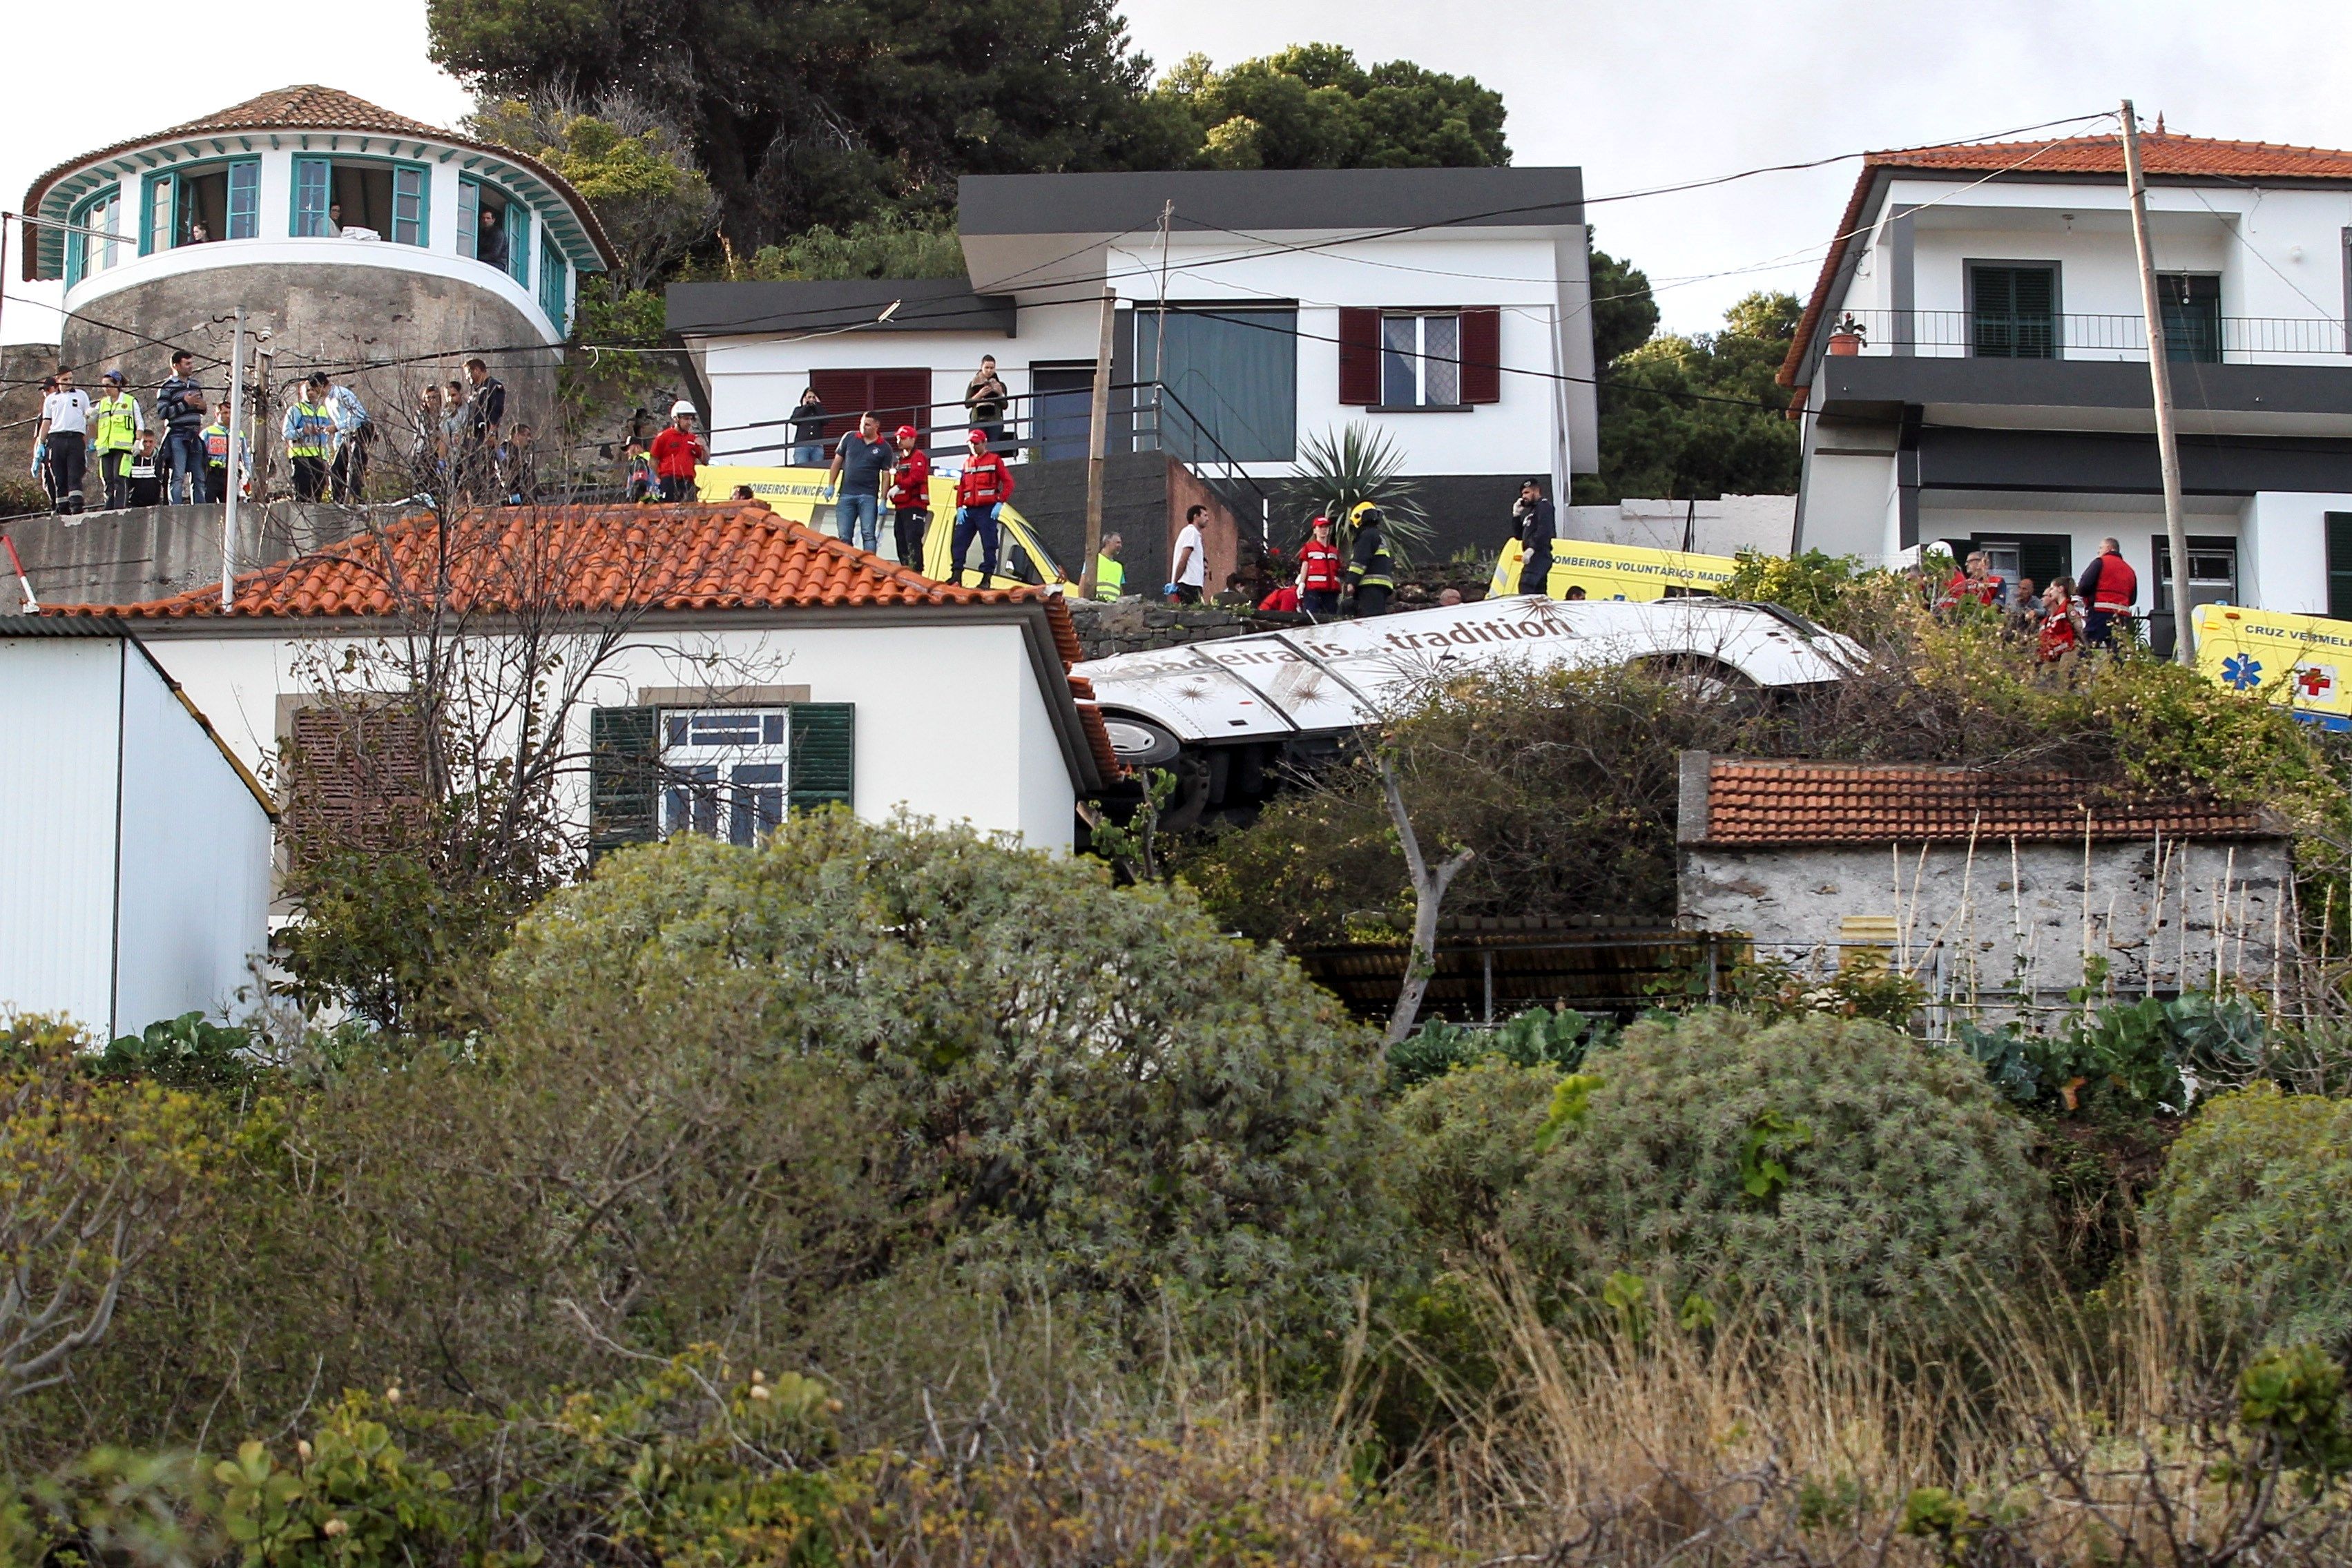  Al menos 28 turistas alemanes mueren en un accidente de autobús en Portugal